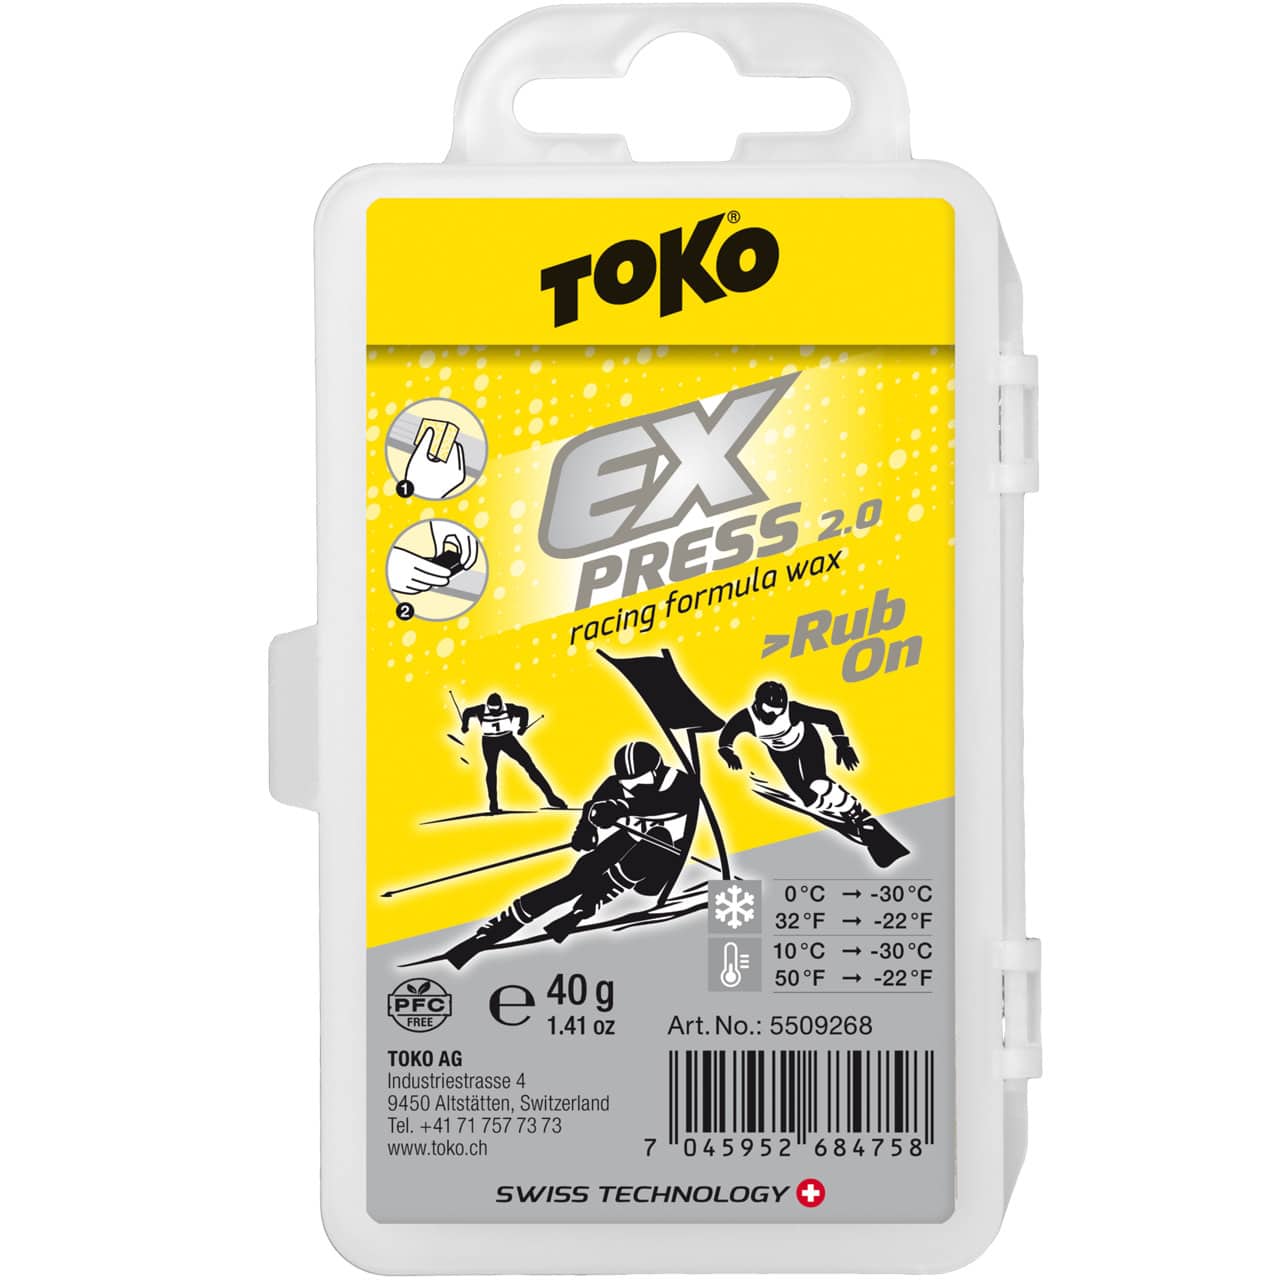 Toko 40 g Express Racing Formula strofinare della Cera con Sughero by 